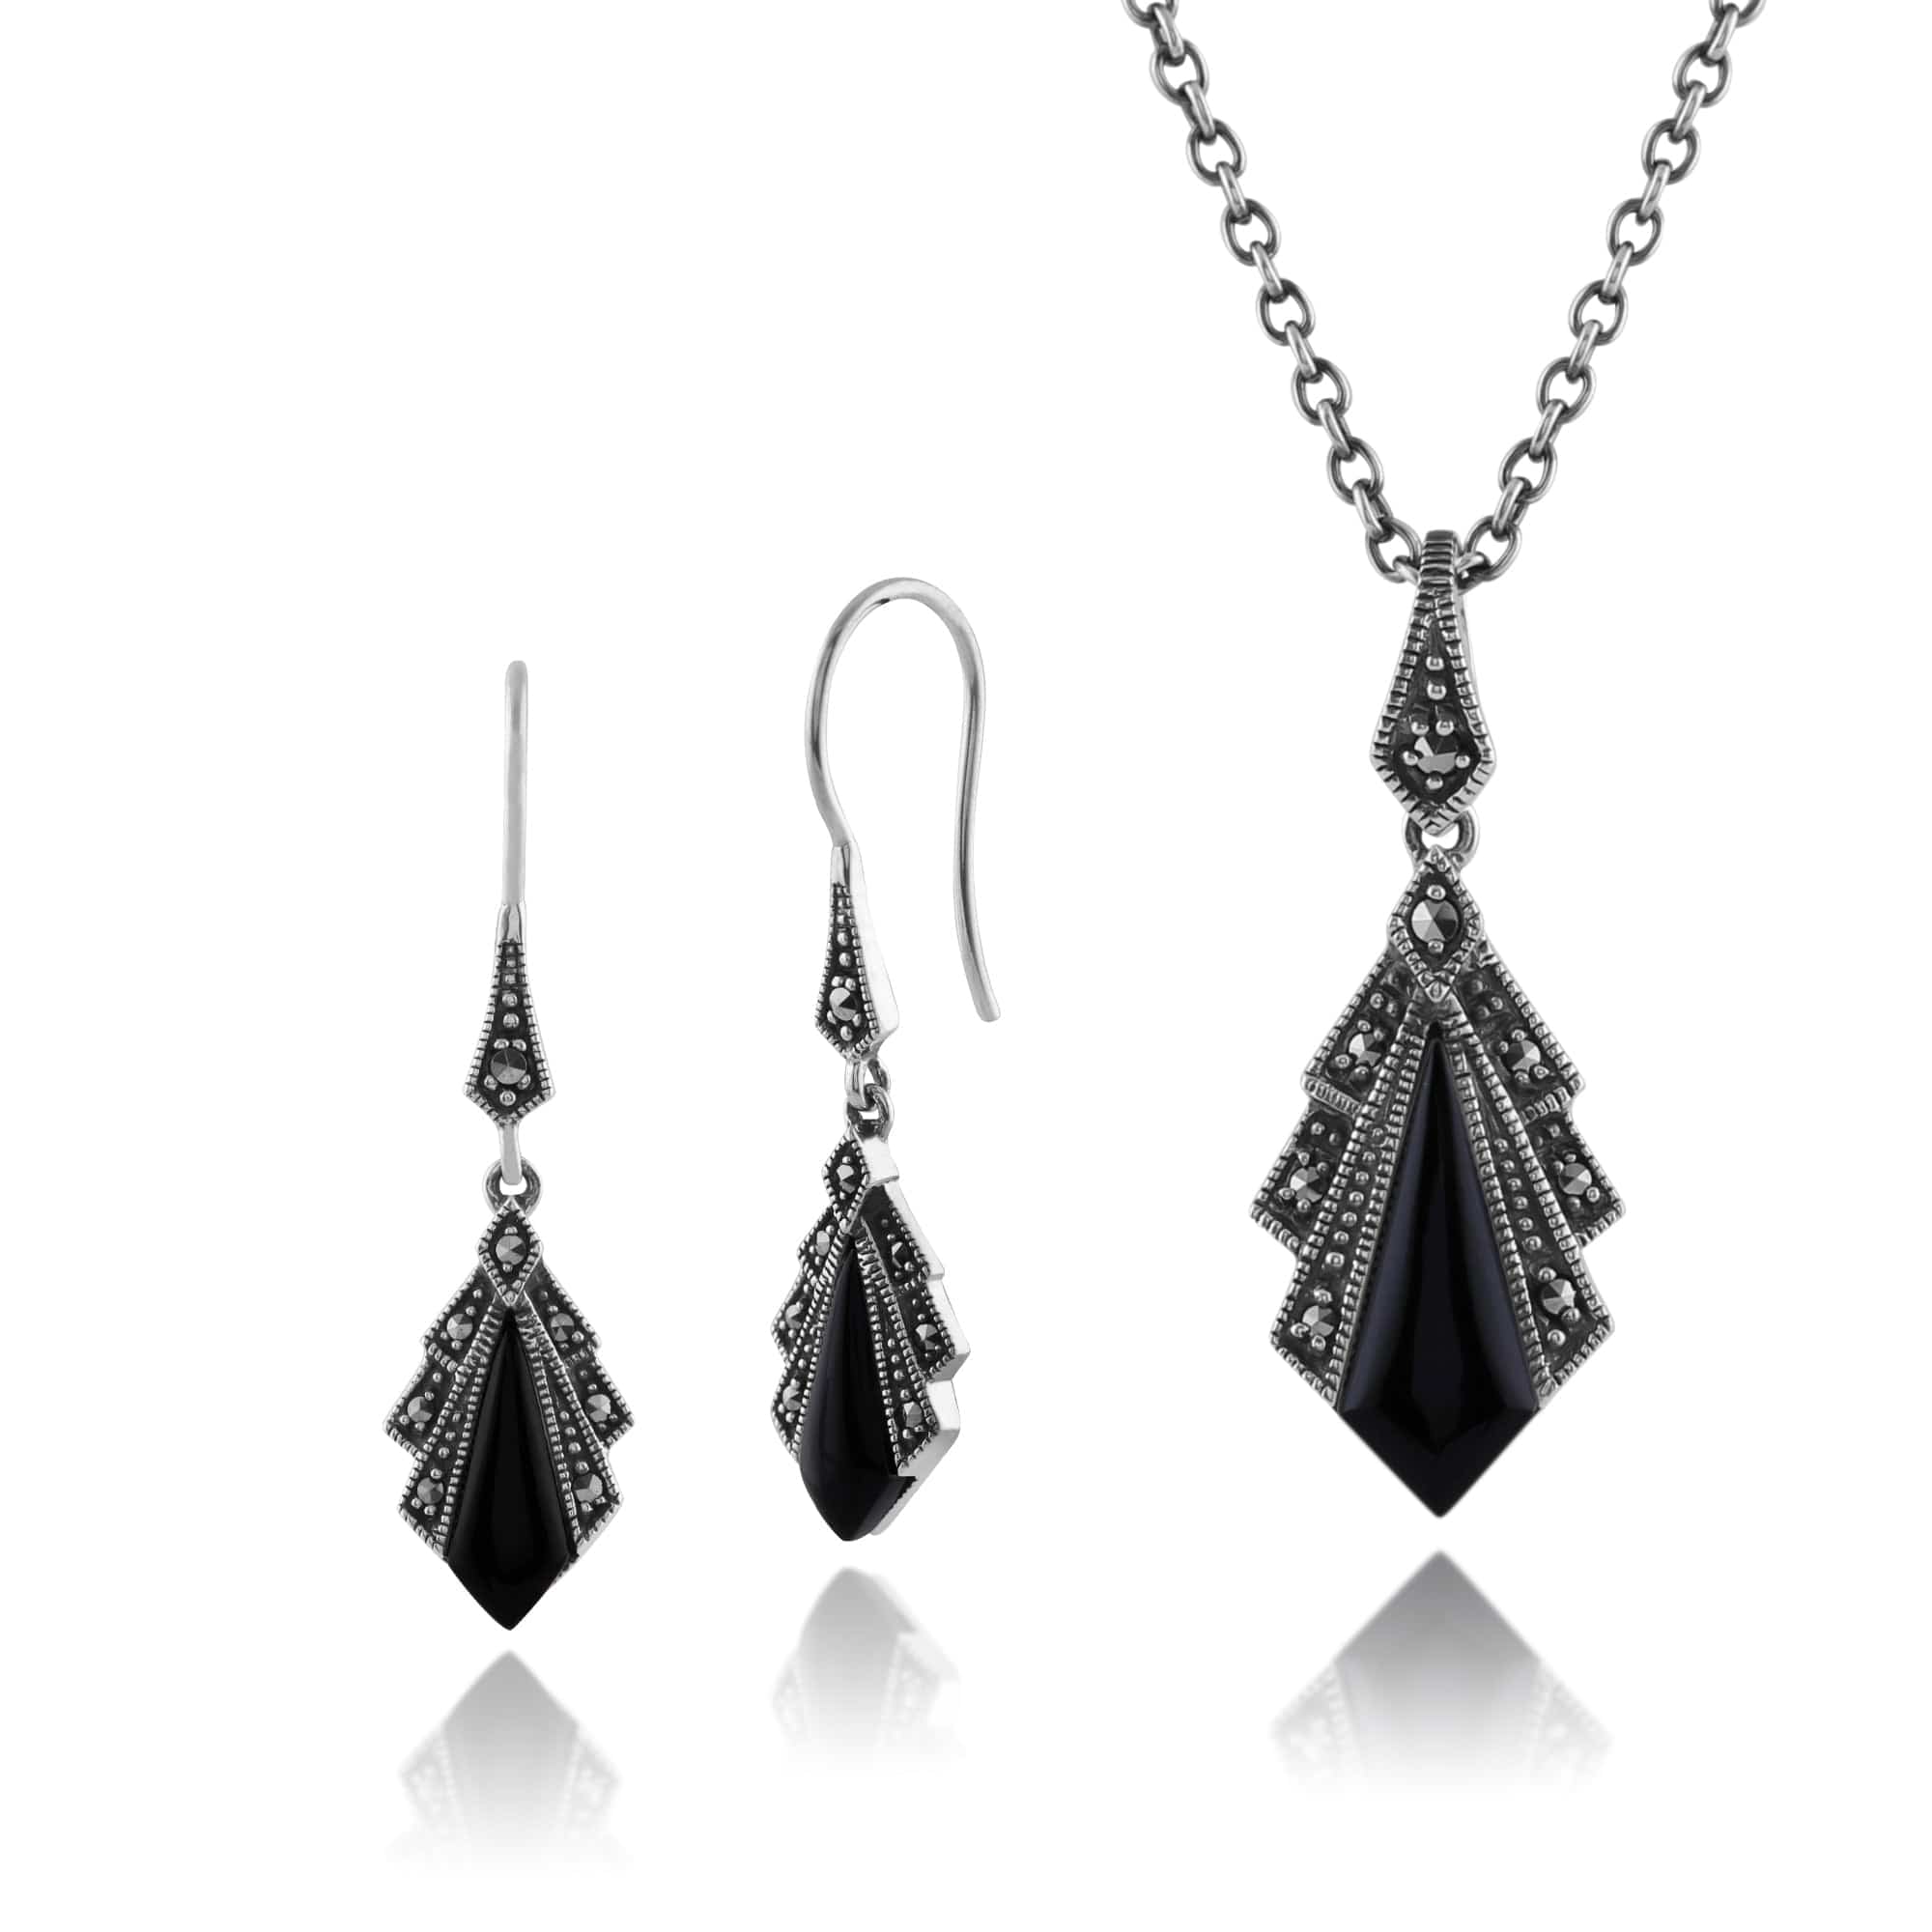 214E823204925-214N658204925 Art Deco Style Style Black Onyx & Marcasite Fan Drop Earrings & Pendant Set in 925 Sterling Silver 1